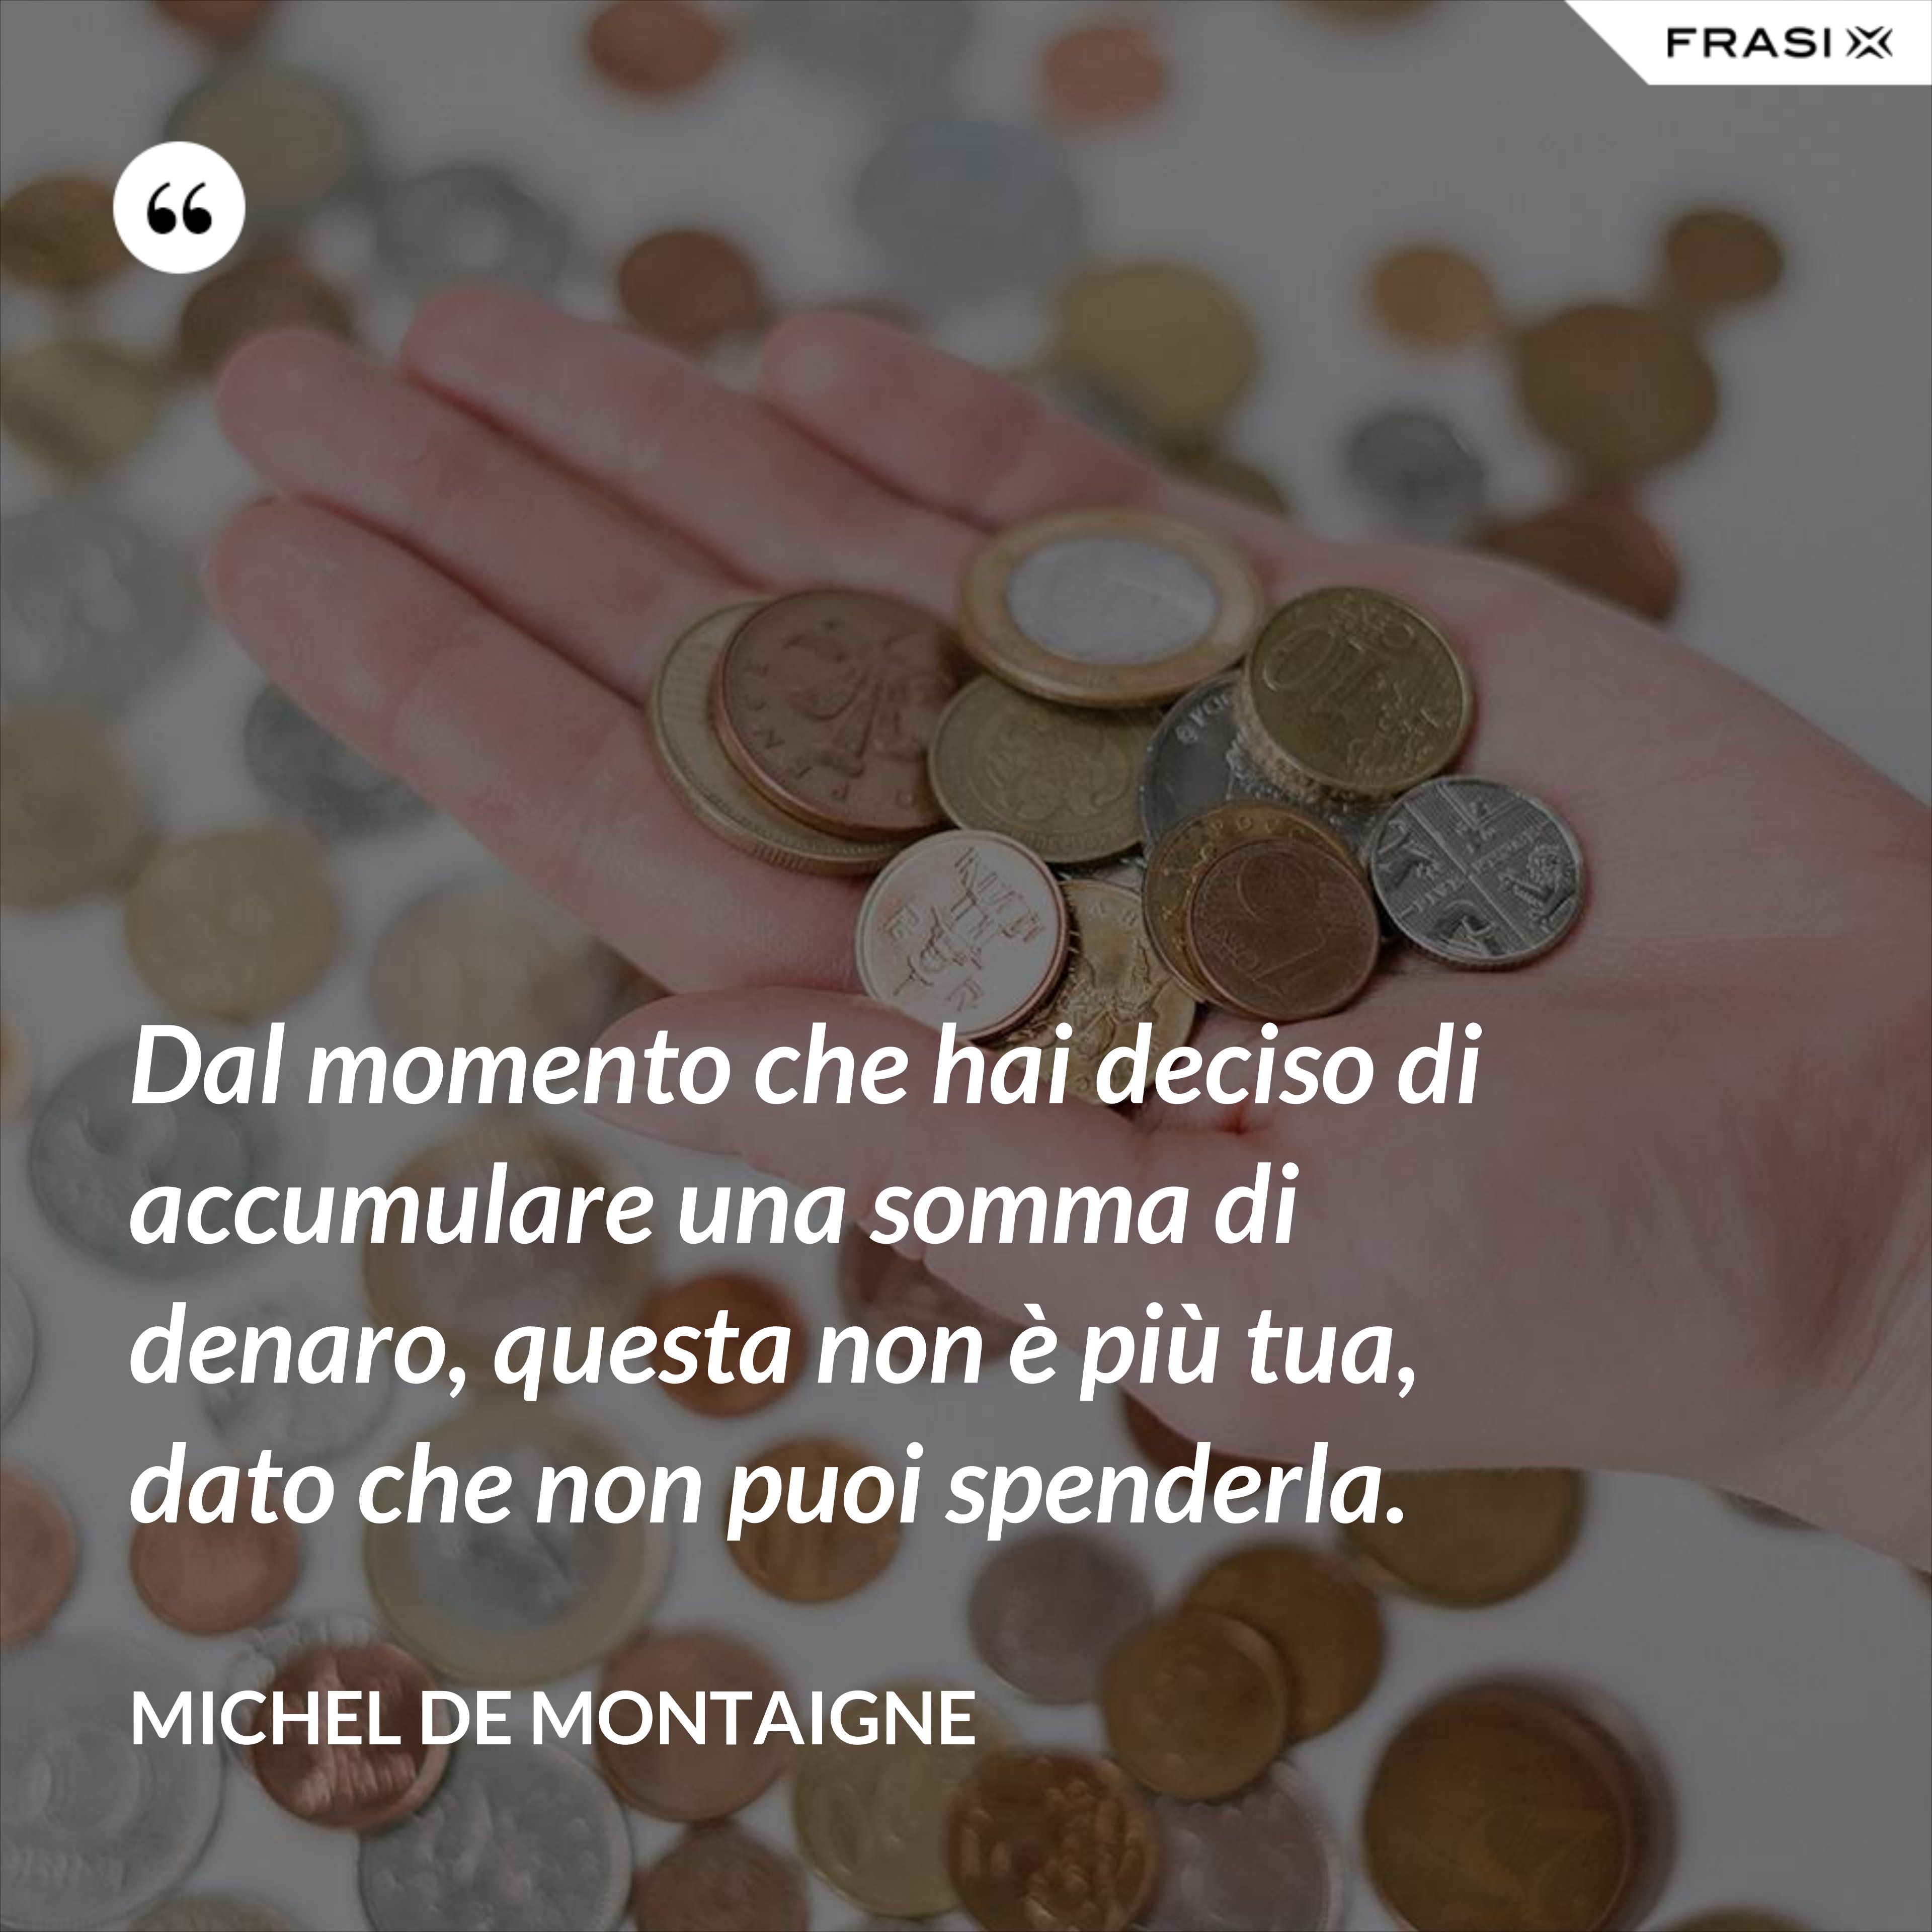 Dal momento che hai deciso di accumulare una somma di denaro, questa non è più tua, dato che non puoi spenderla. - Michel de Montaigne